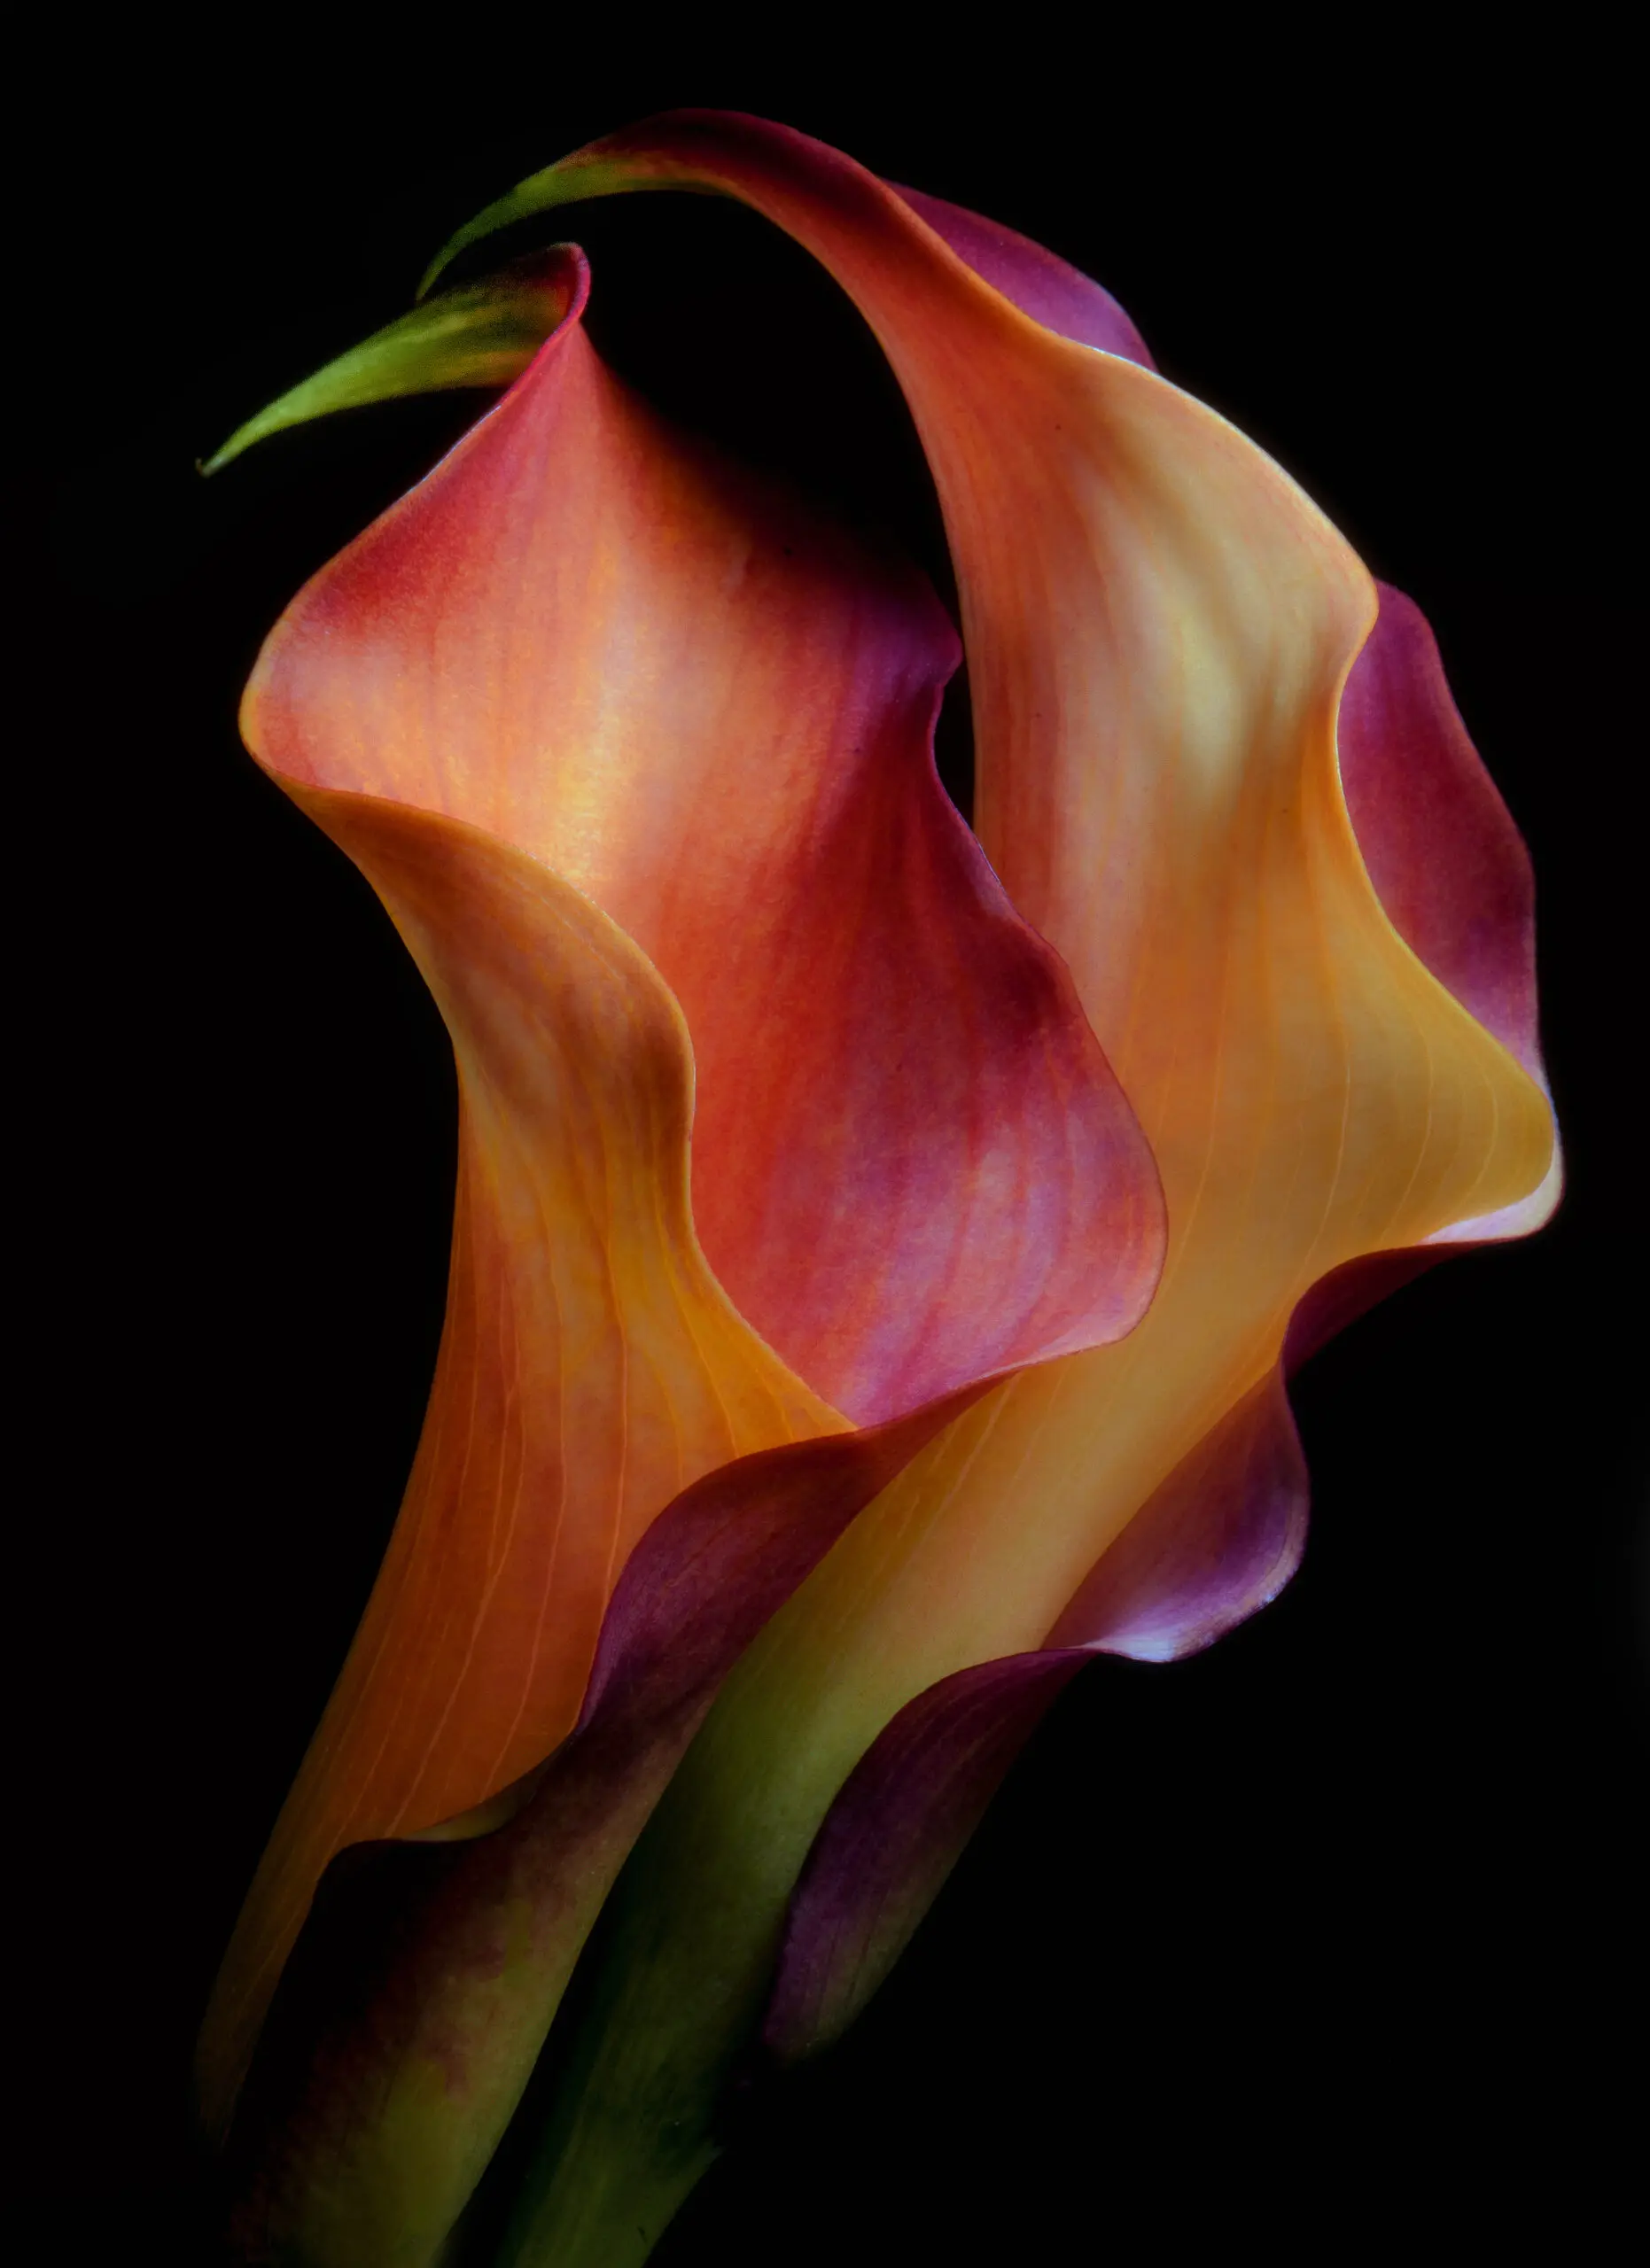 Wandbild (6092) Tenderness by Jon Kinney, 1x.com präsentiert: Stillleben,Kreatives,Natur,Blumen und Blüten